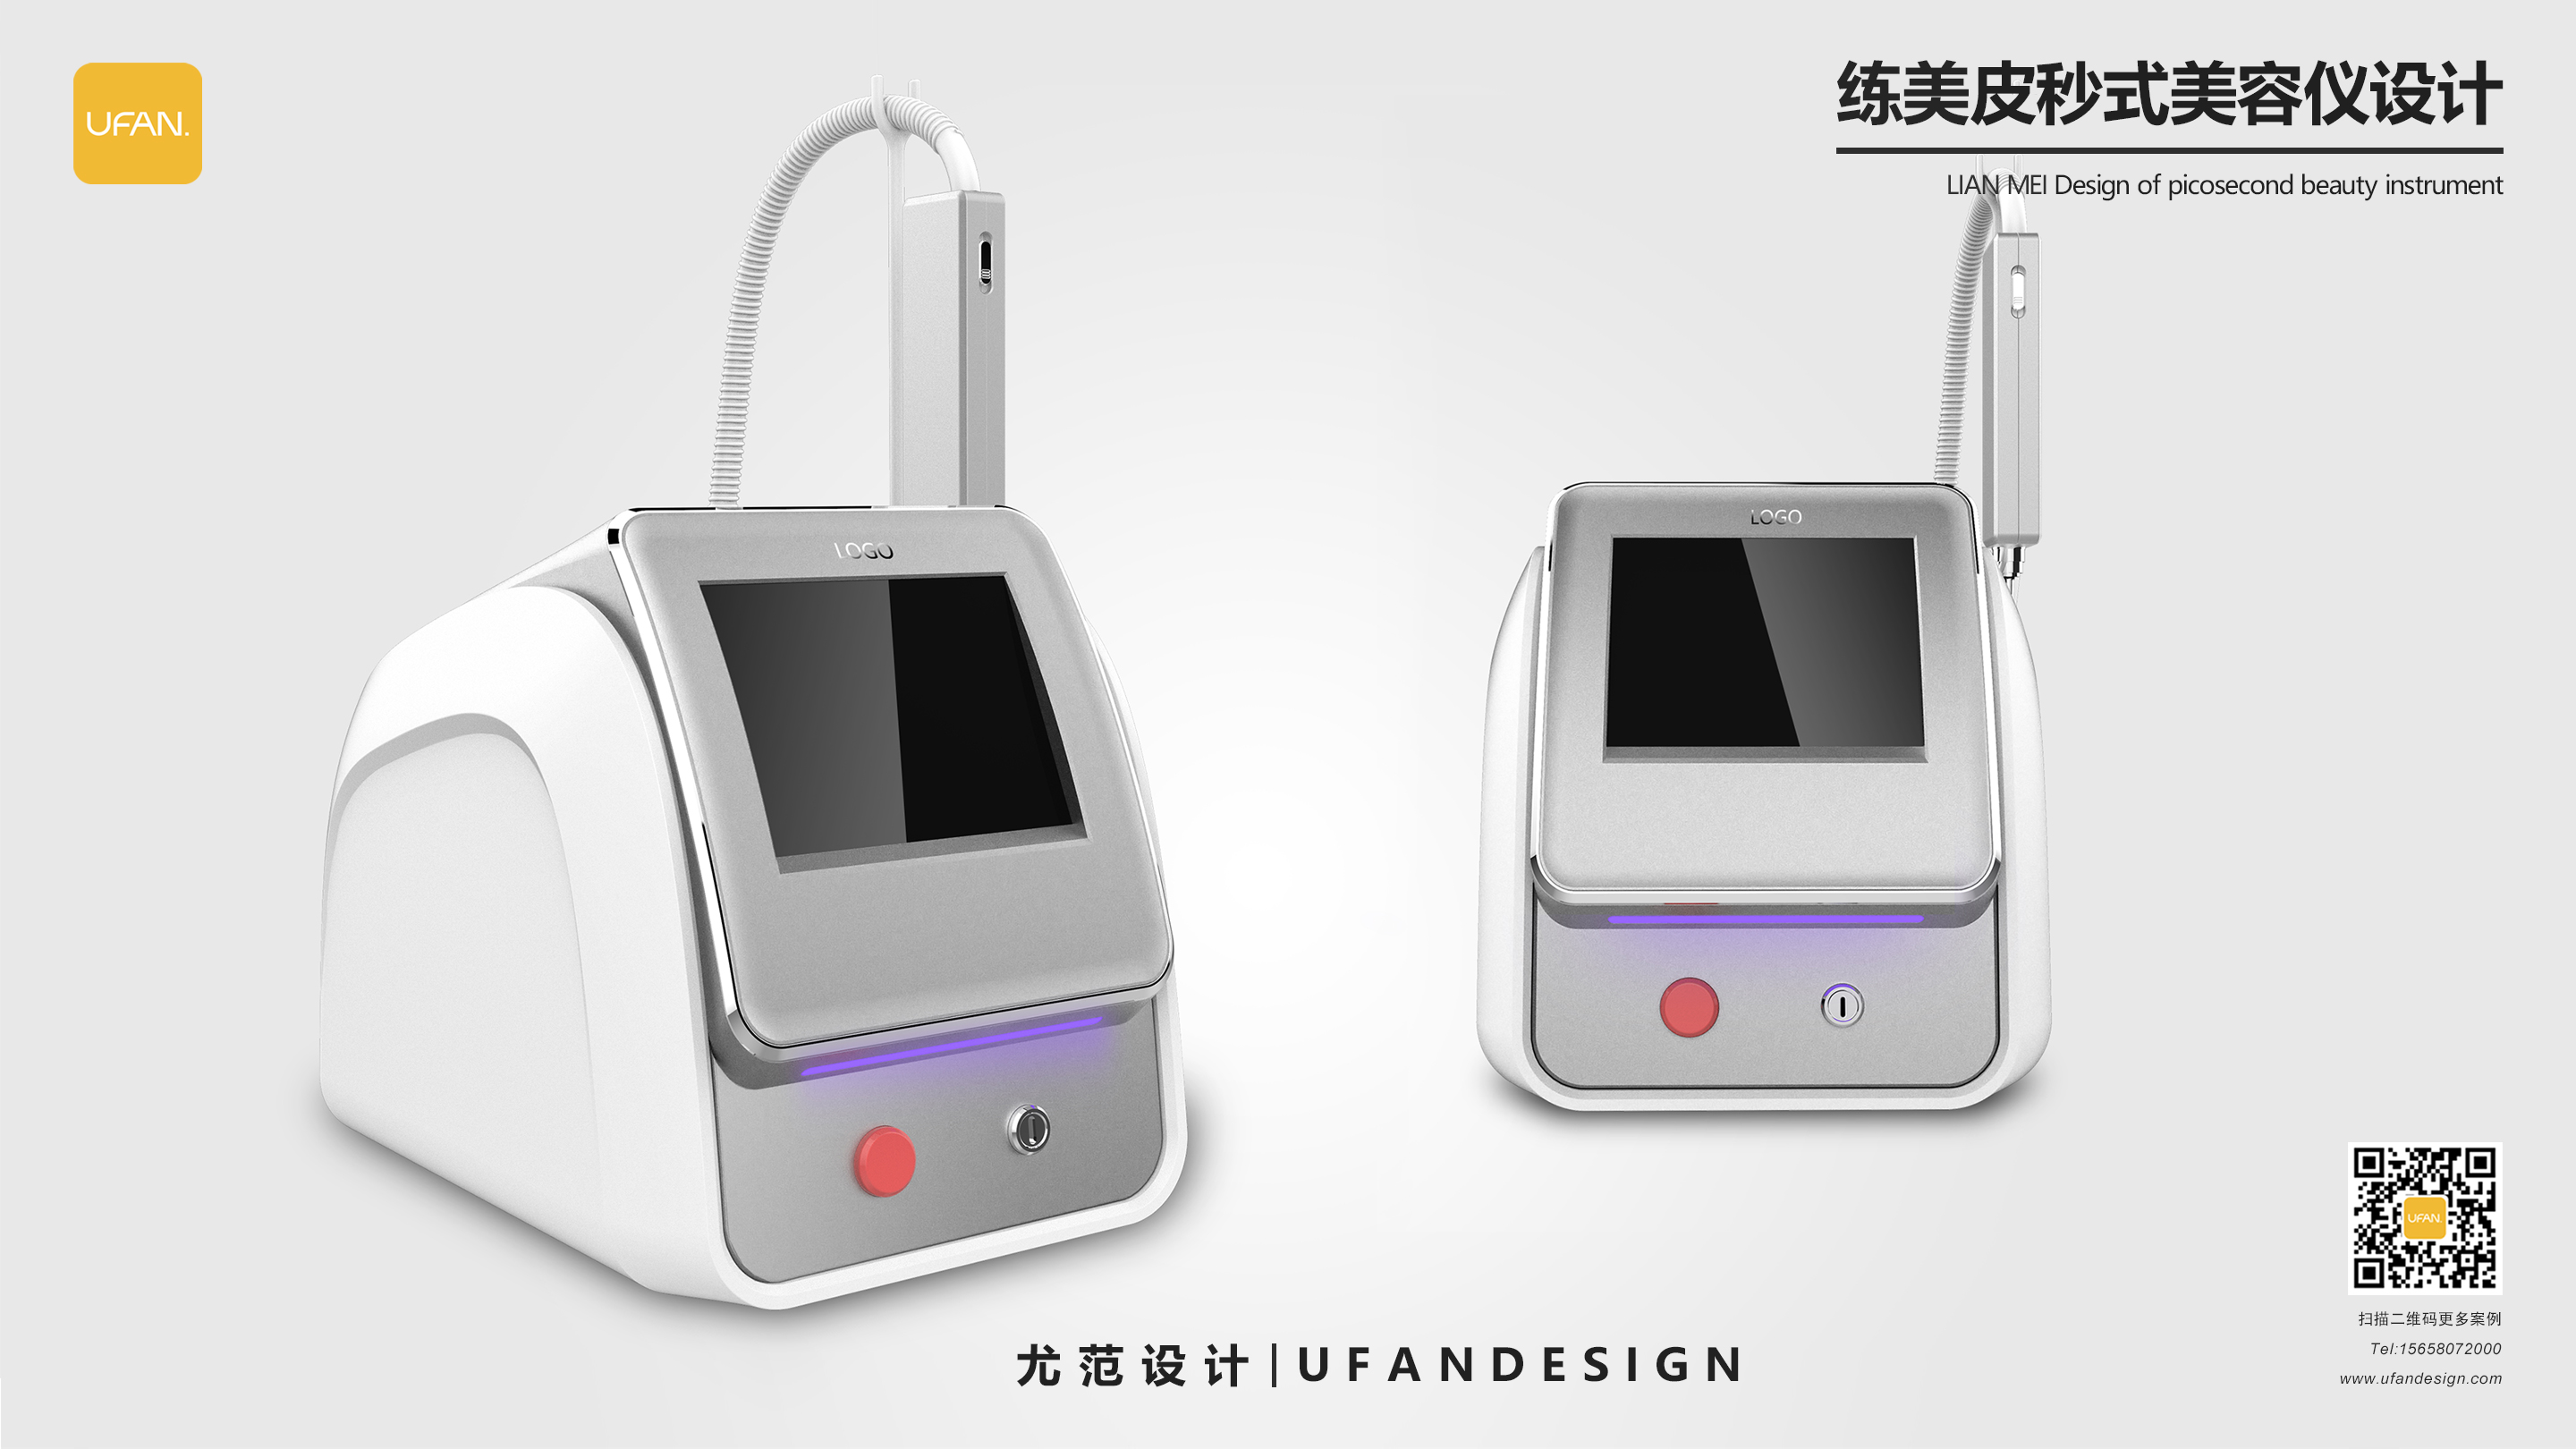 杭州尤范设计工业设计公司-美容仪设计公司-医疗器械外观设计02.jpg